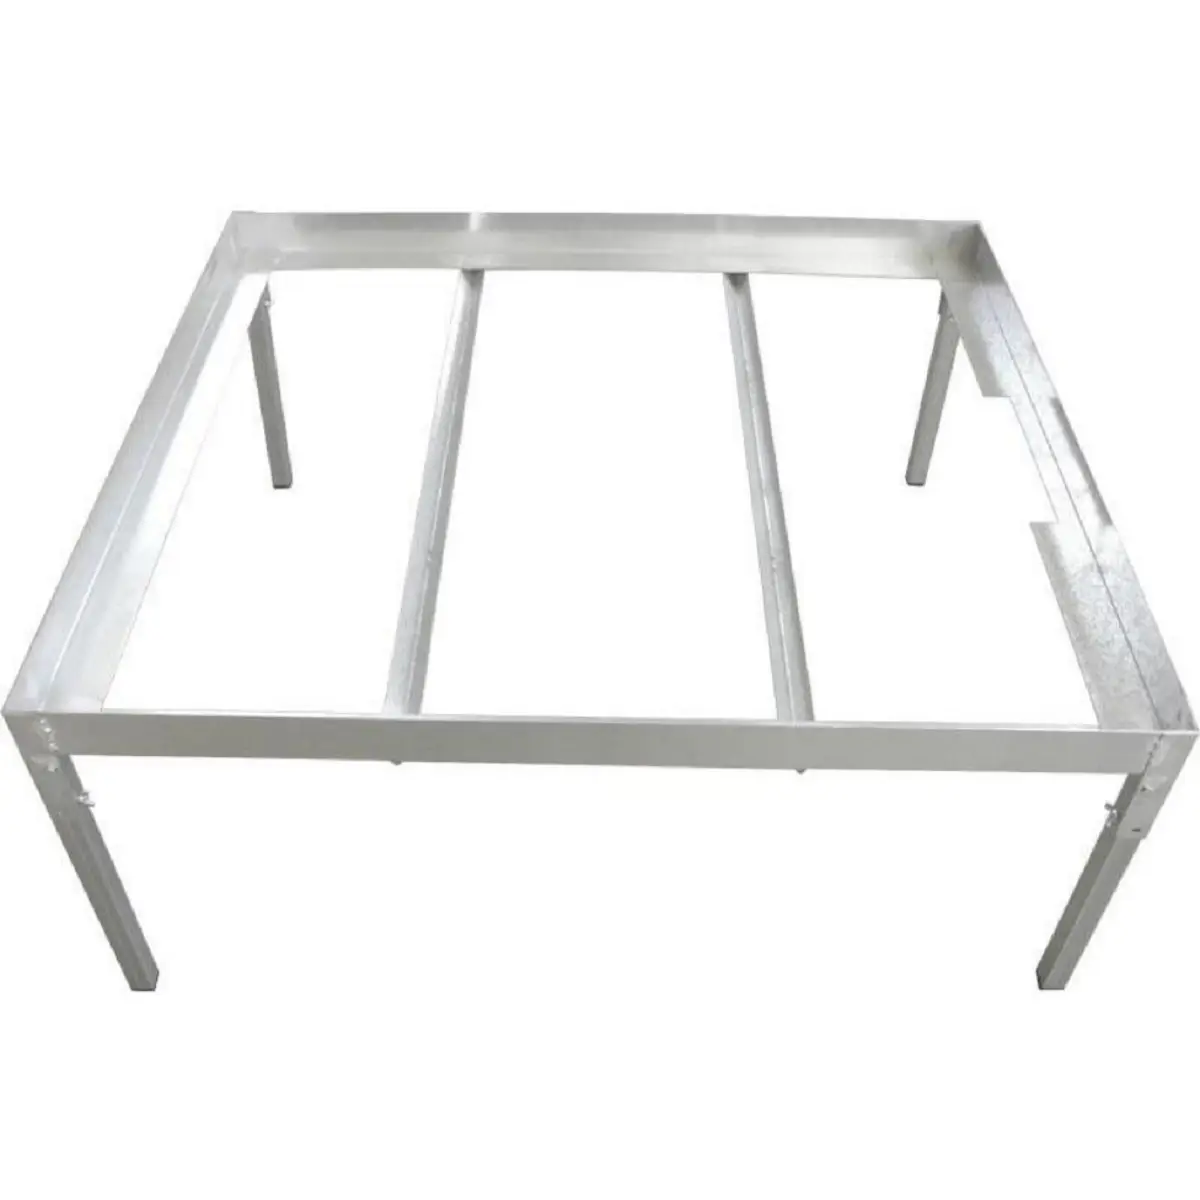 Support métallique pour table de culture hydroponique 110x100cm